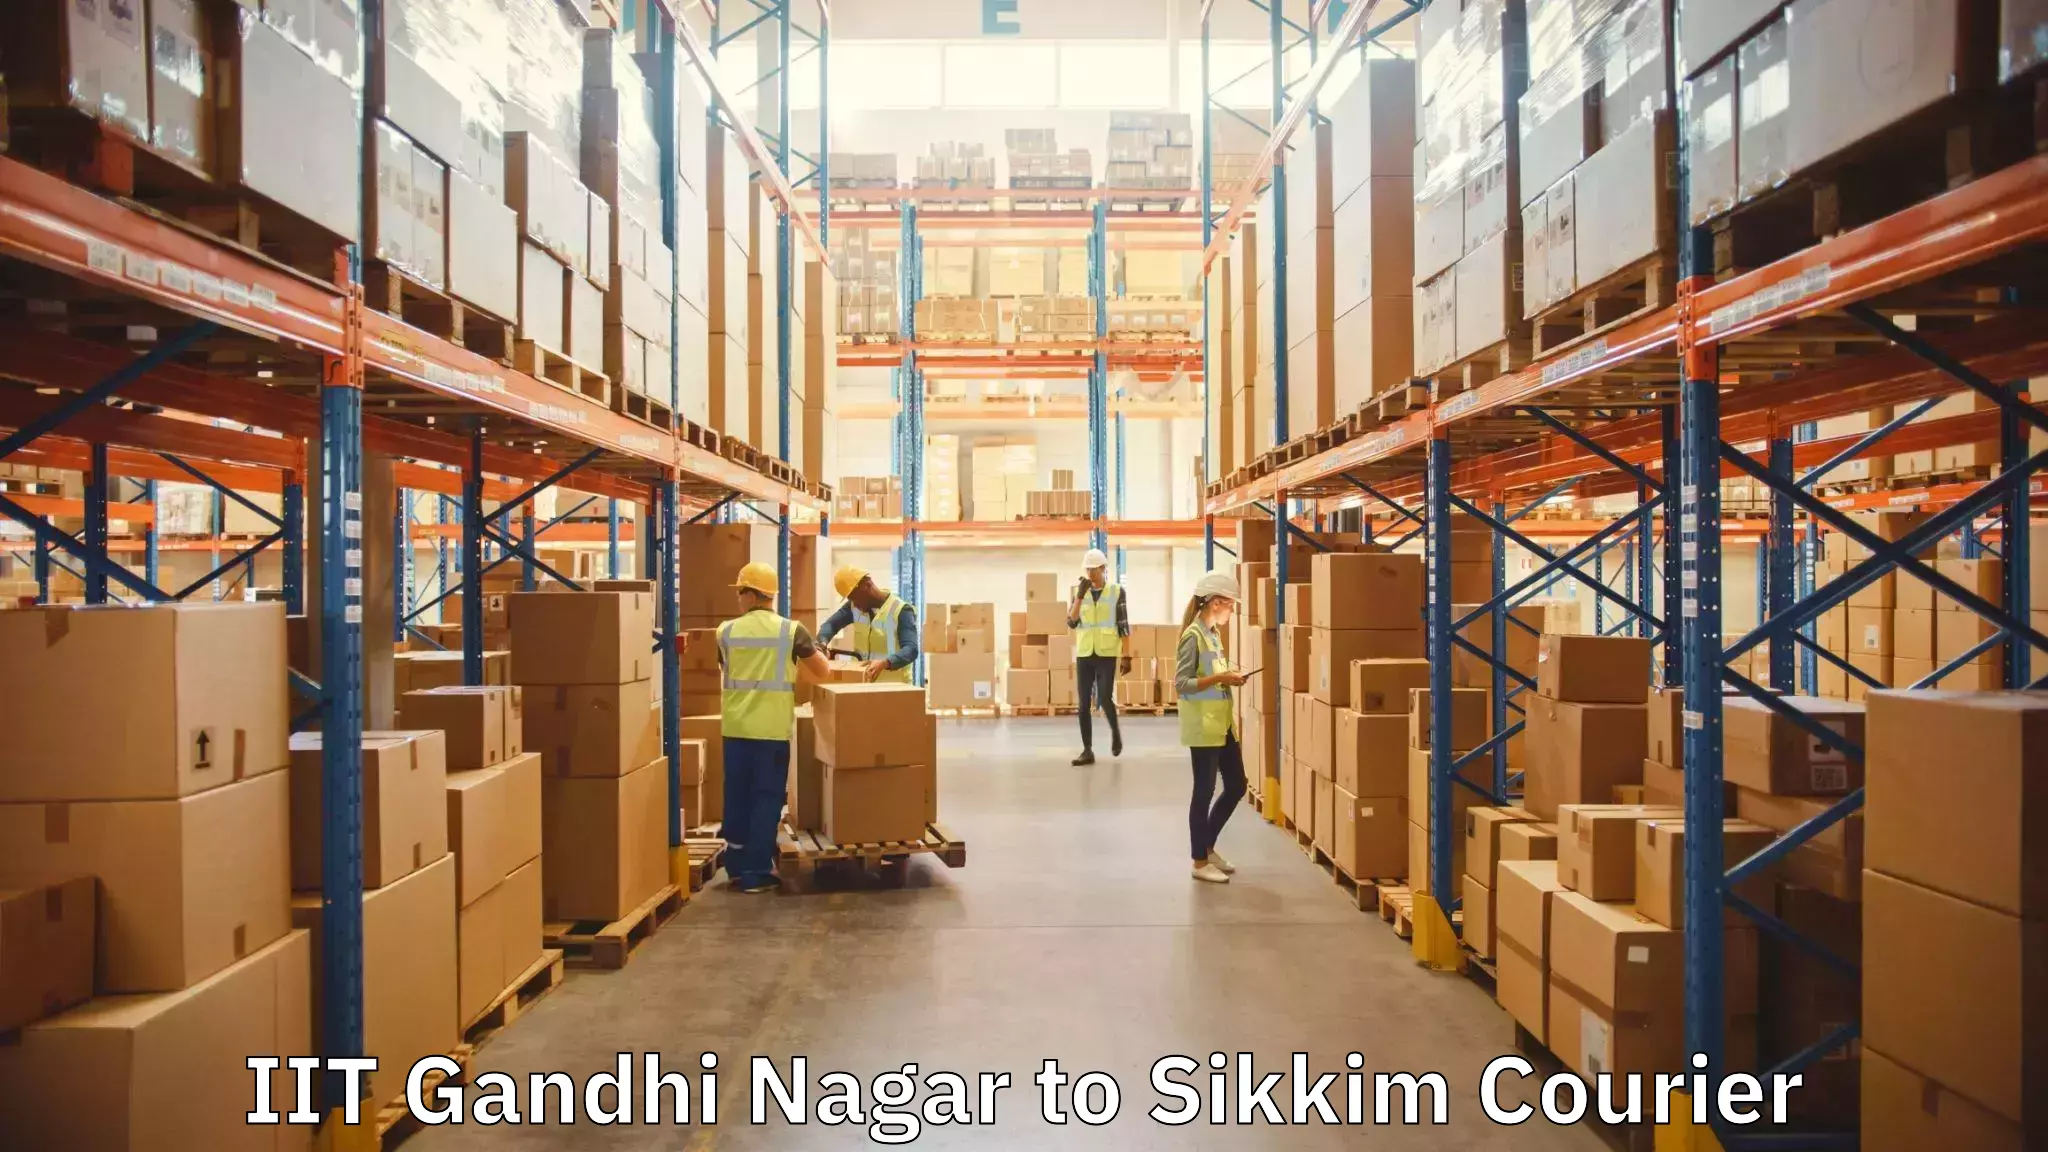 Furniture relocation services IIT Gandhi Nagar to Sikkim